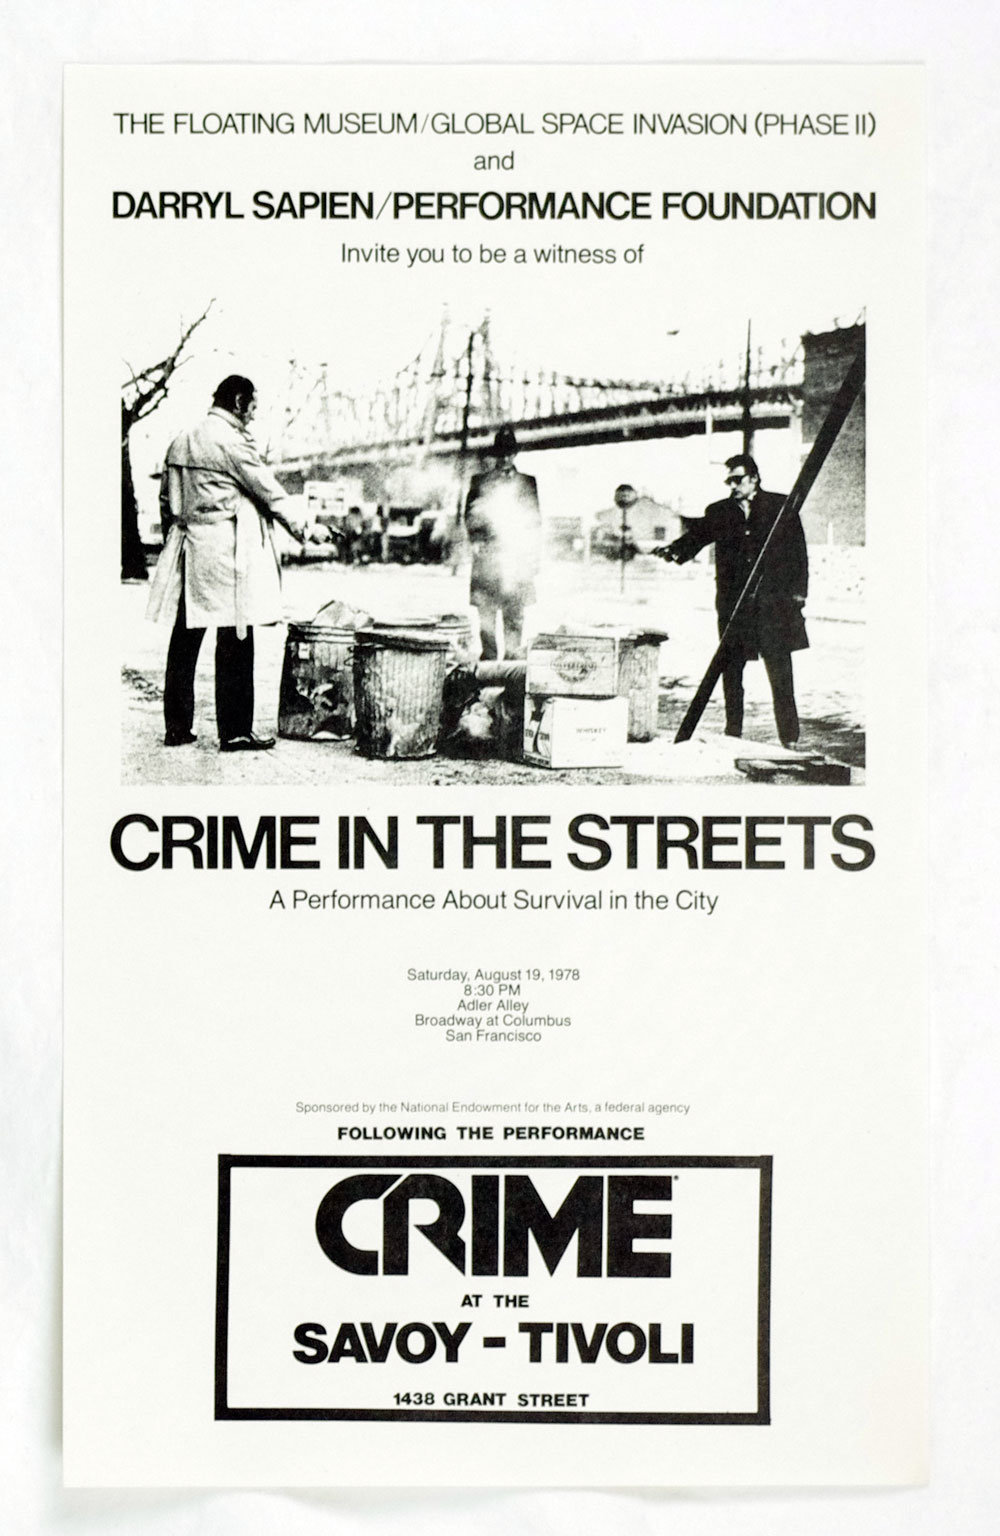 Crime Poster 1978 Aug 19 Adler Alley San Francisco